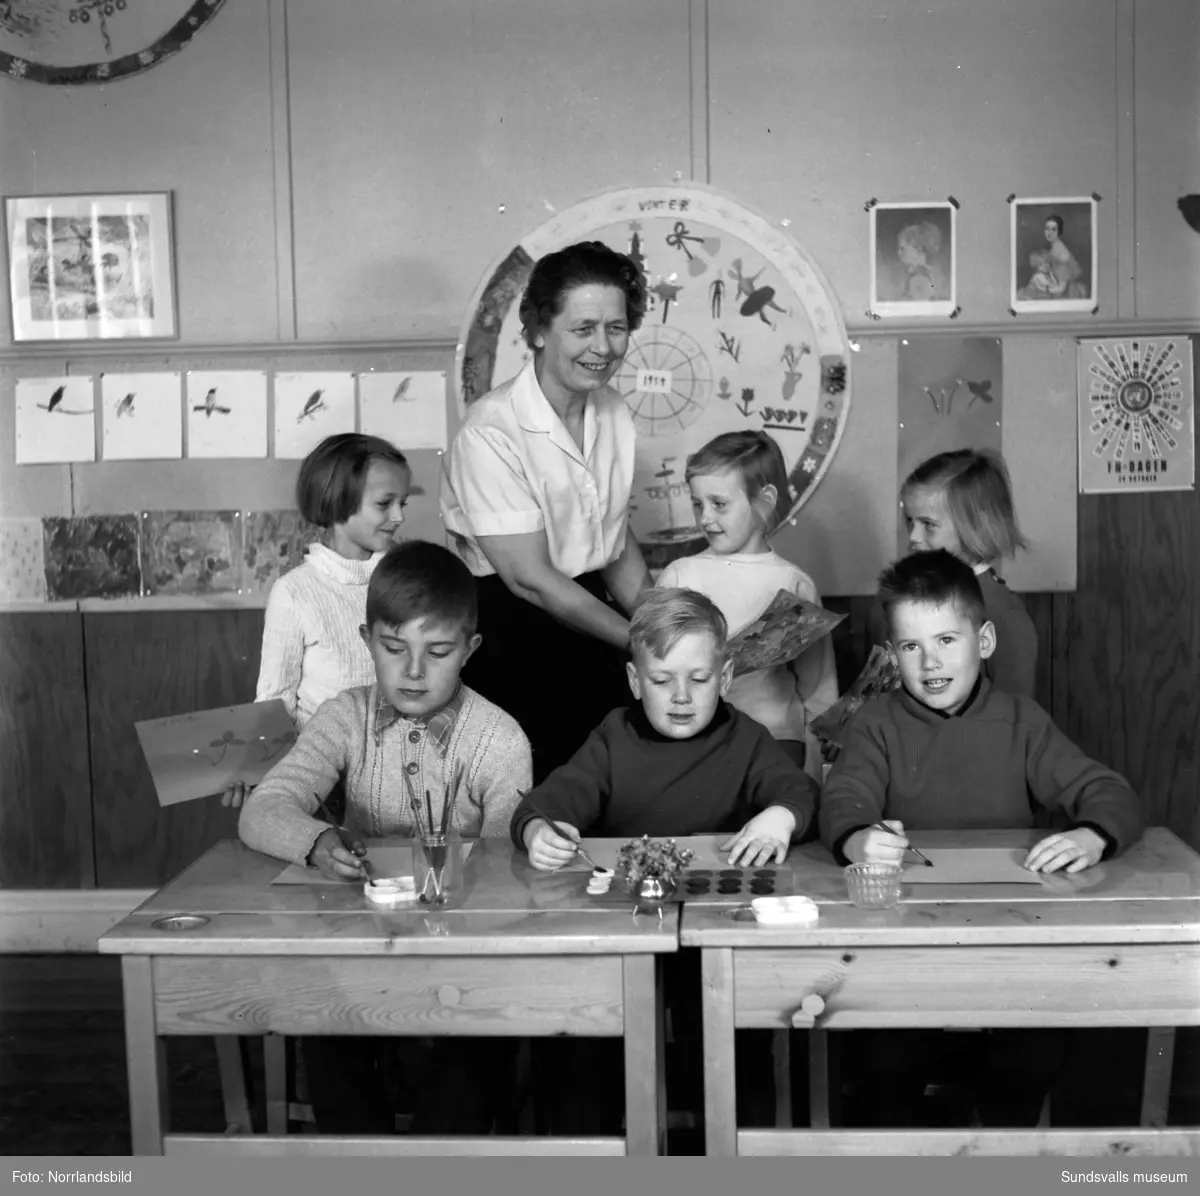 En småskoleklass 1959, teckning står på schemat. Möjligen Skönsbergs skola.